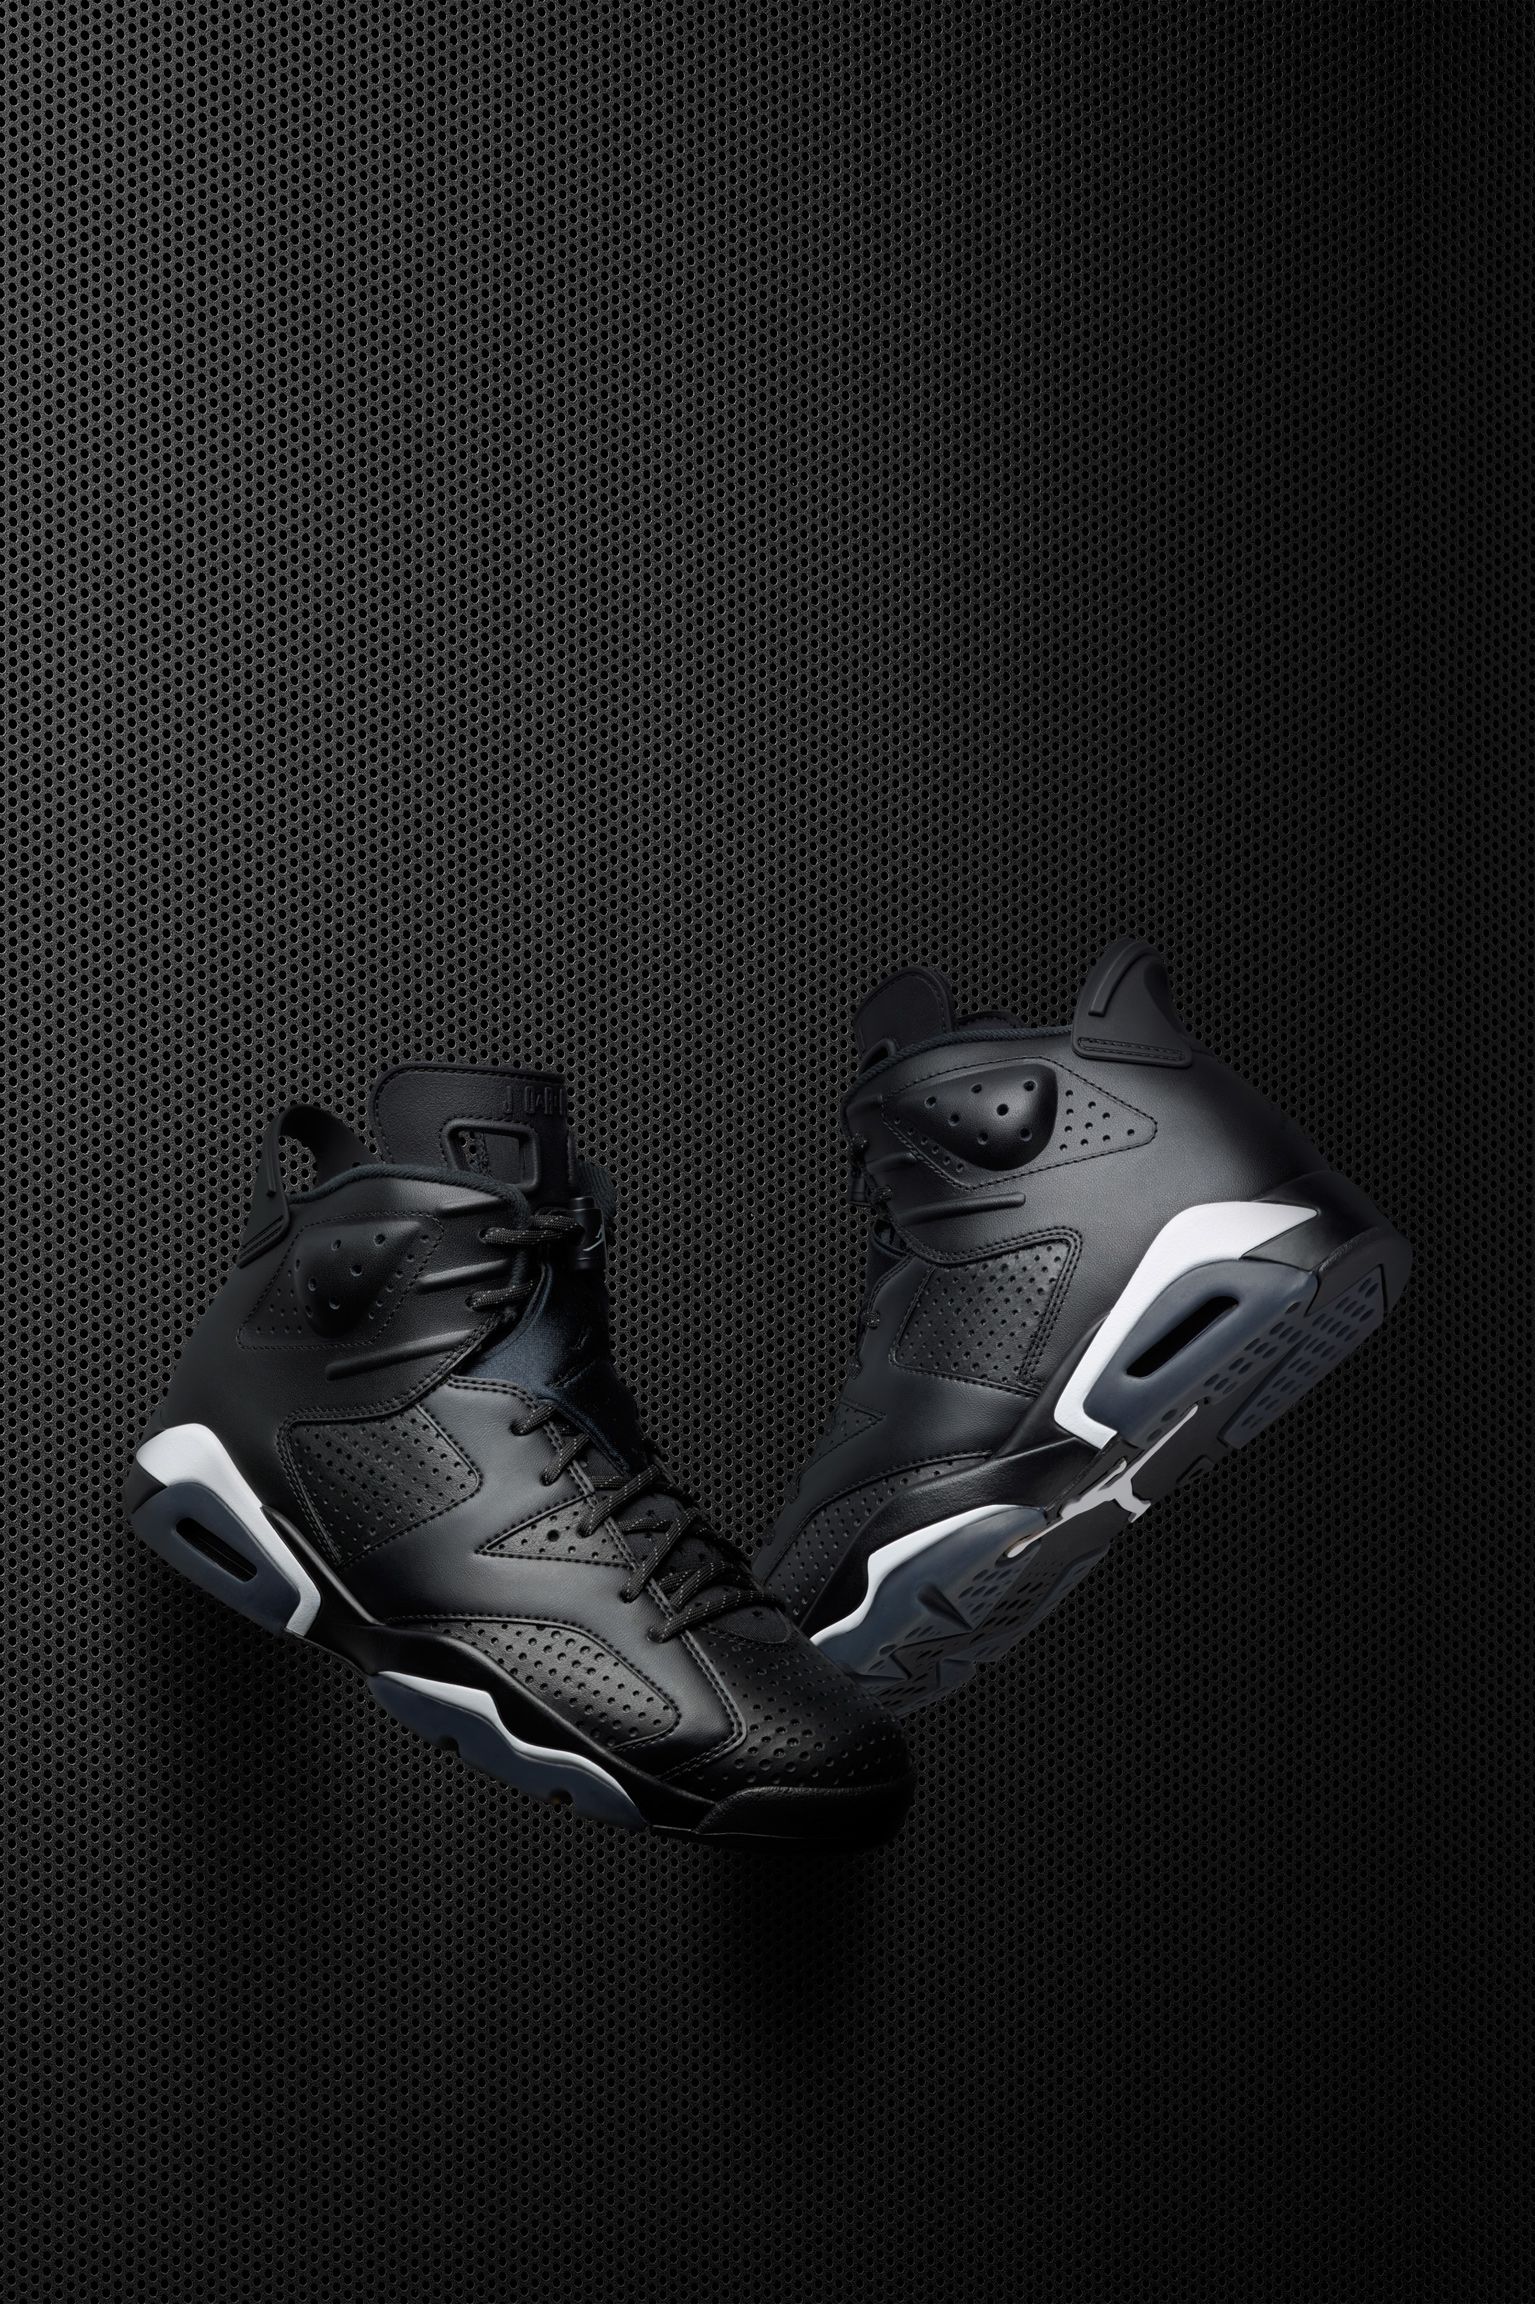 terremoto Unidad modo Air Jordan 6 Retro "Black". Nike SNKRS ES